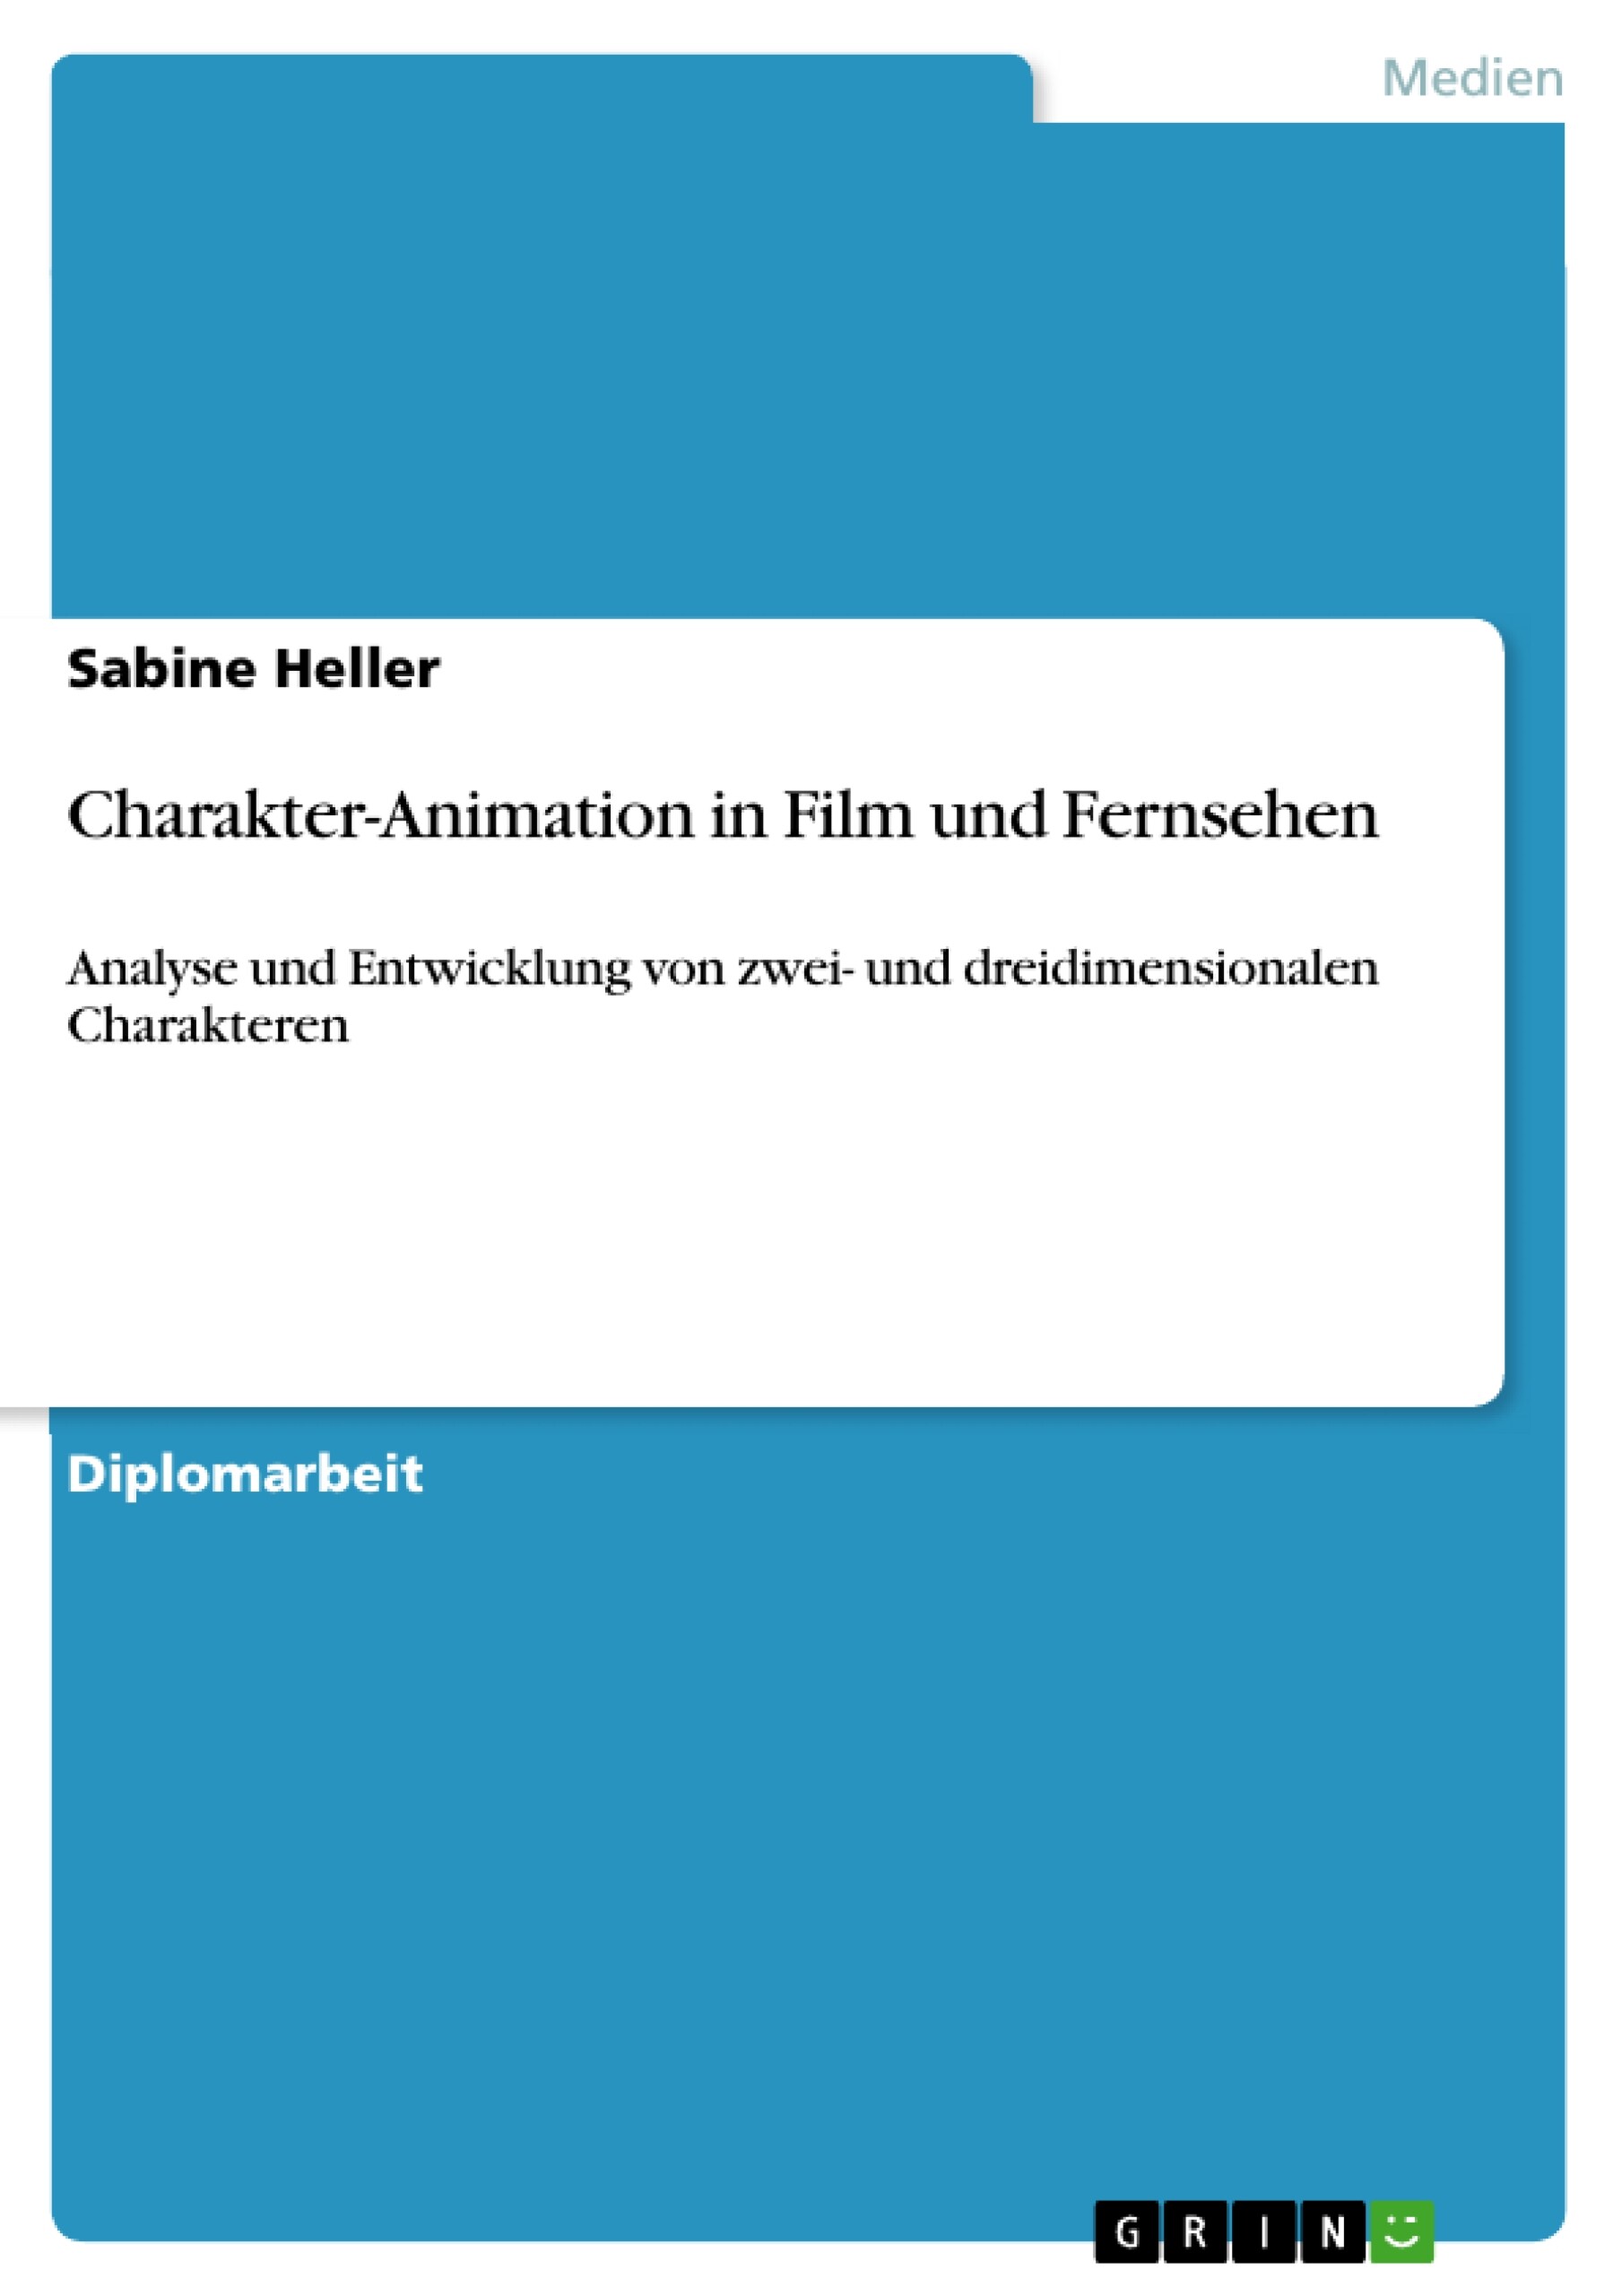 Charakter-Animation in Film und Fernsehen